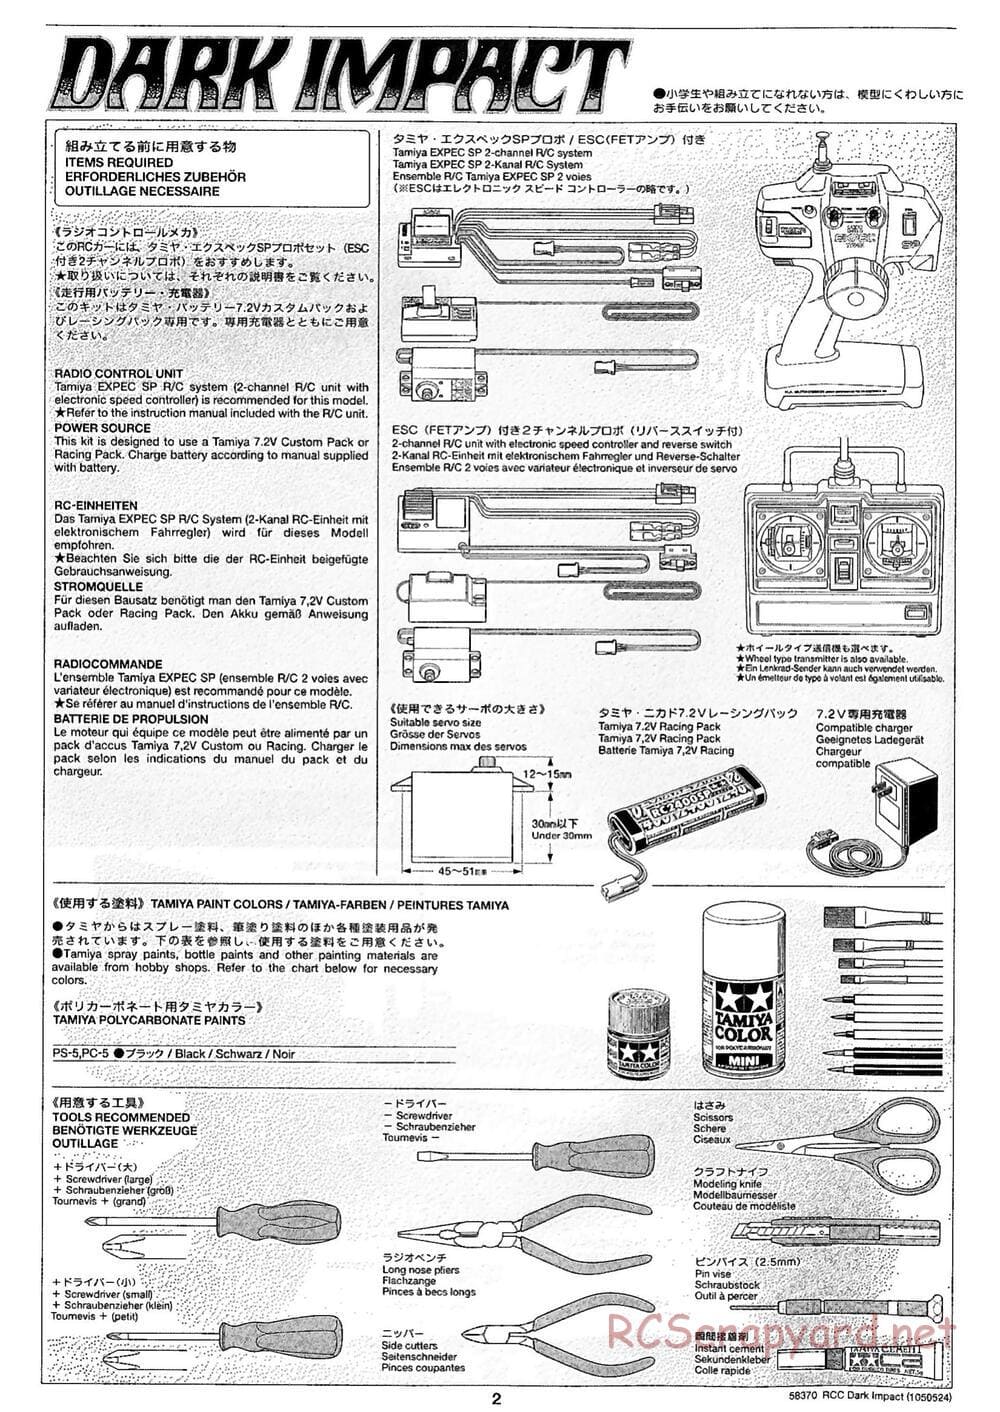 Tamiya - Dark Impact Chassis - Manual - Page 2